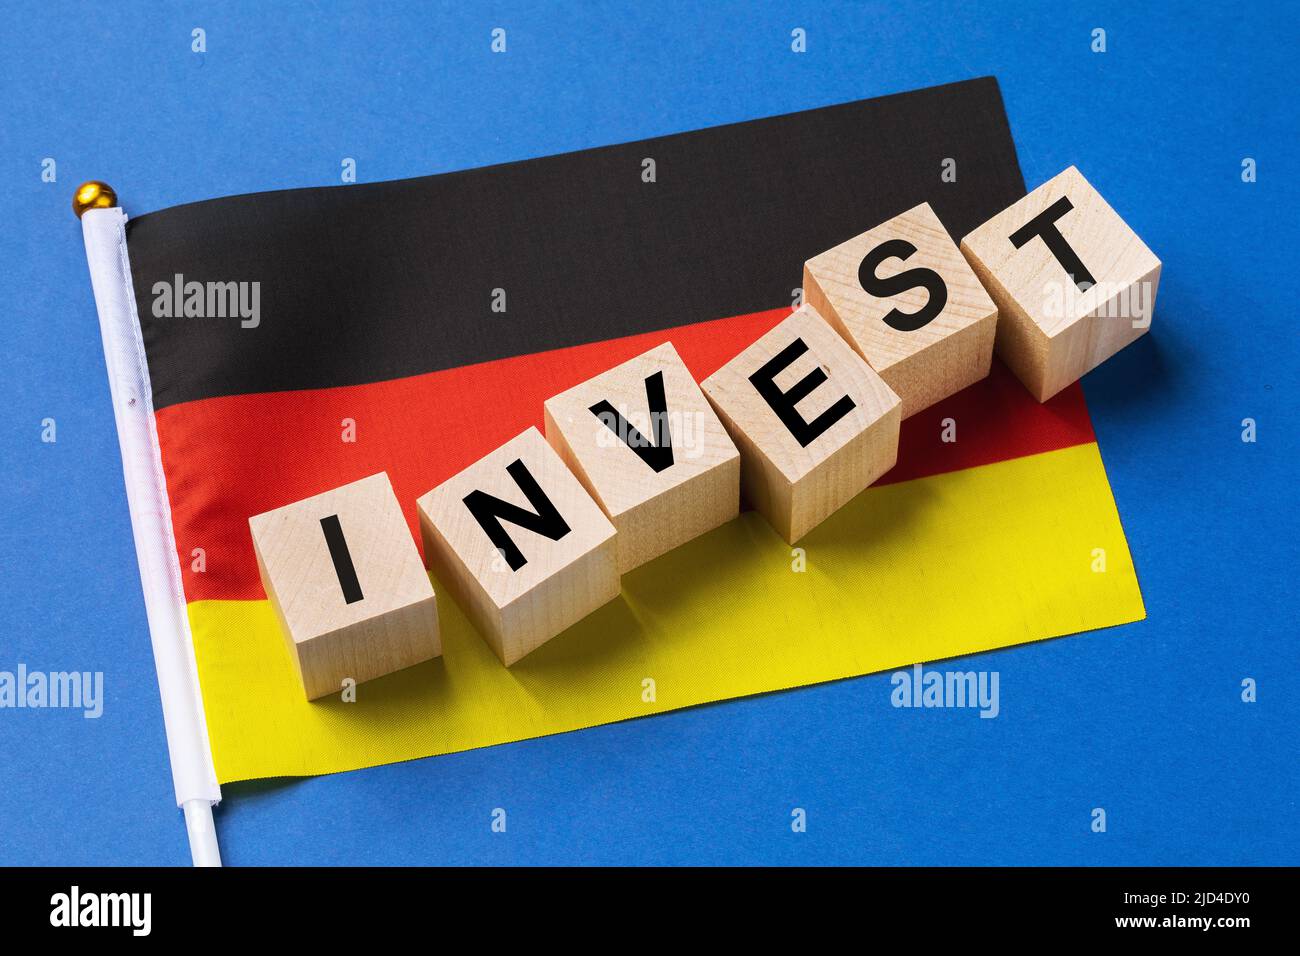 Cubos de madera con texto y una bandera sobre un fondo coloreado, el concepto de inversión de Alemania Foto de stock